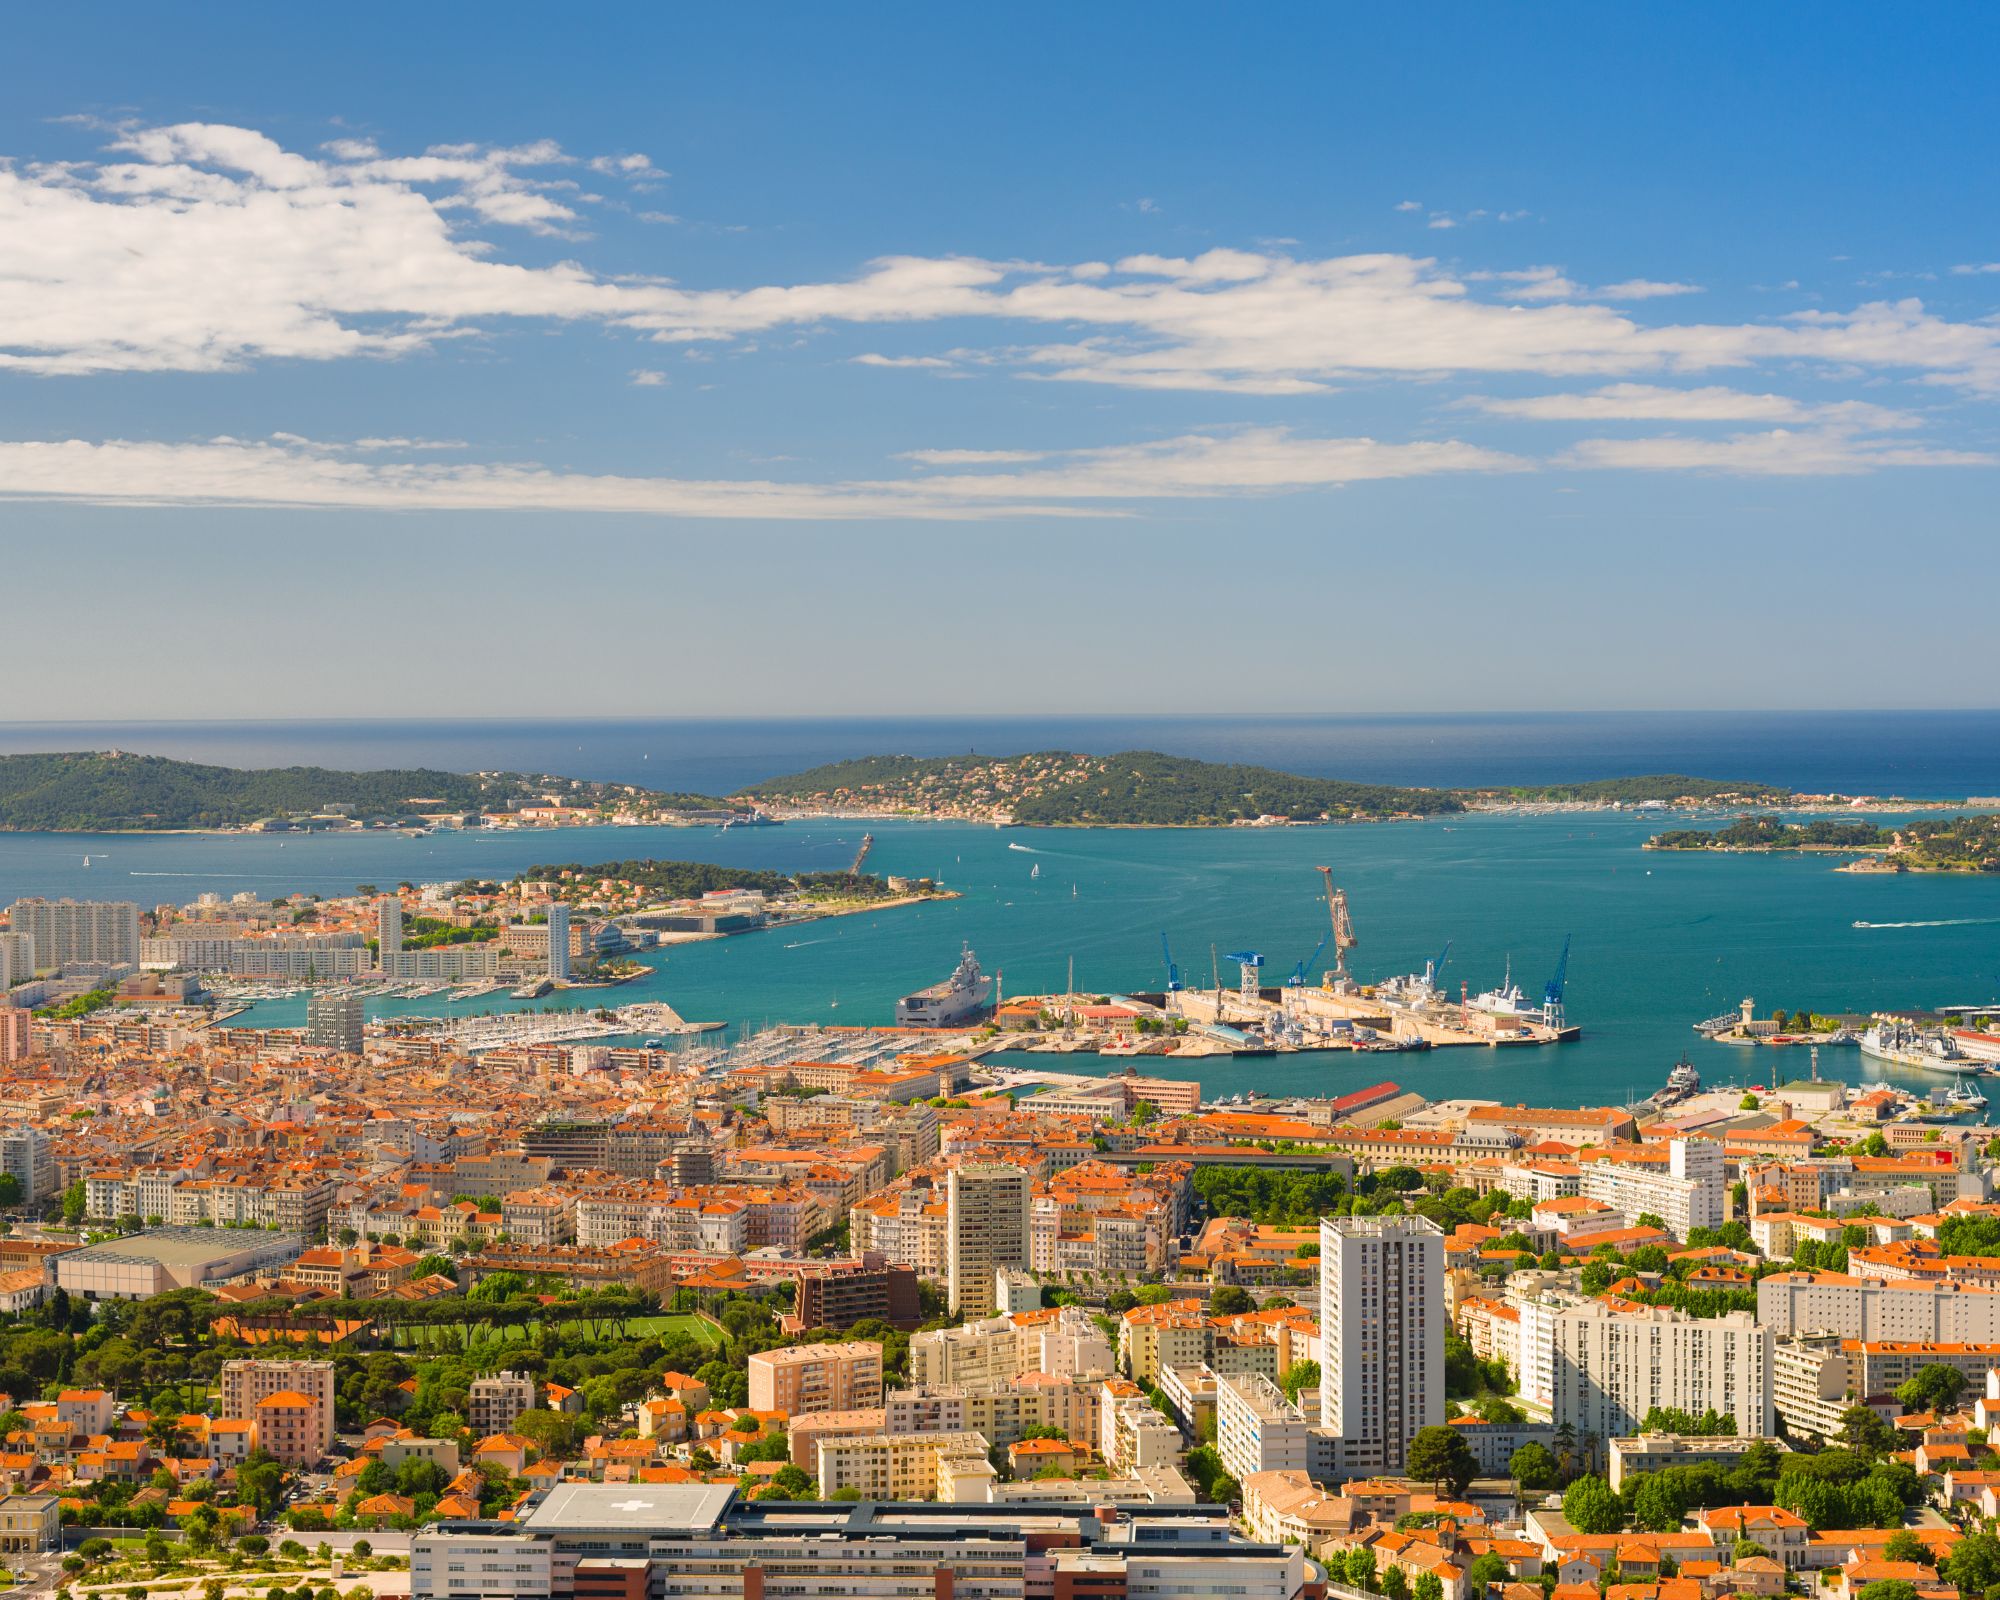 Achat d’un local commercial sur Toulon : ce que vous devez savoir